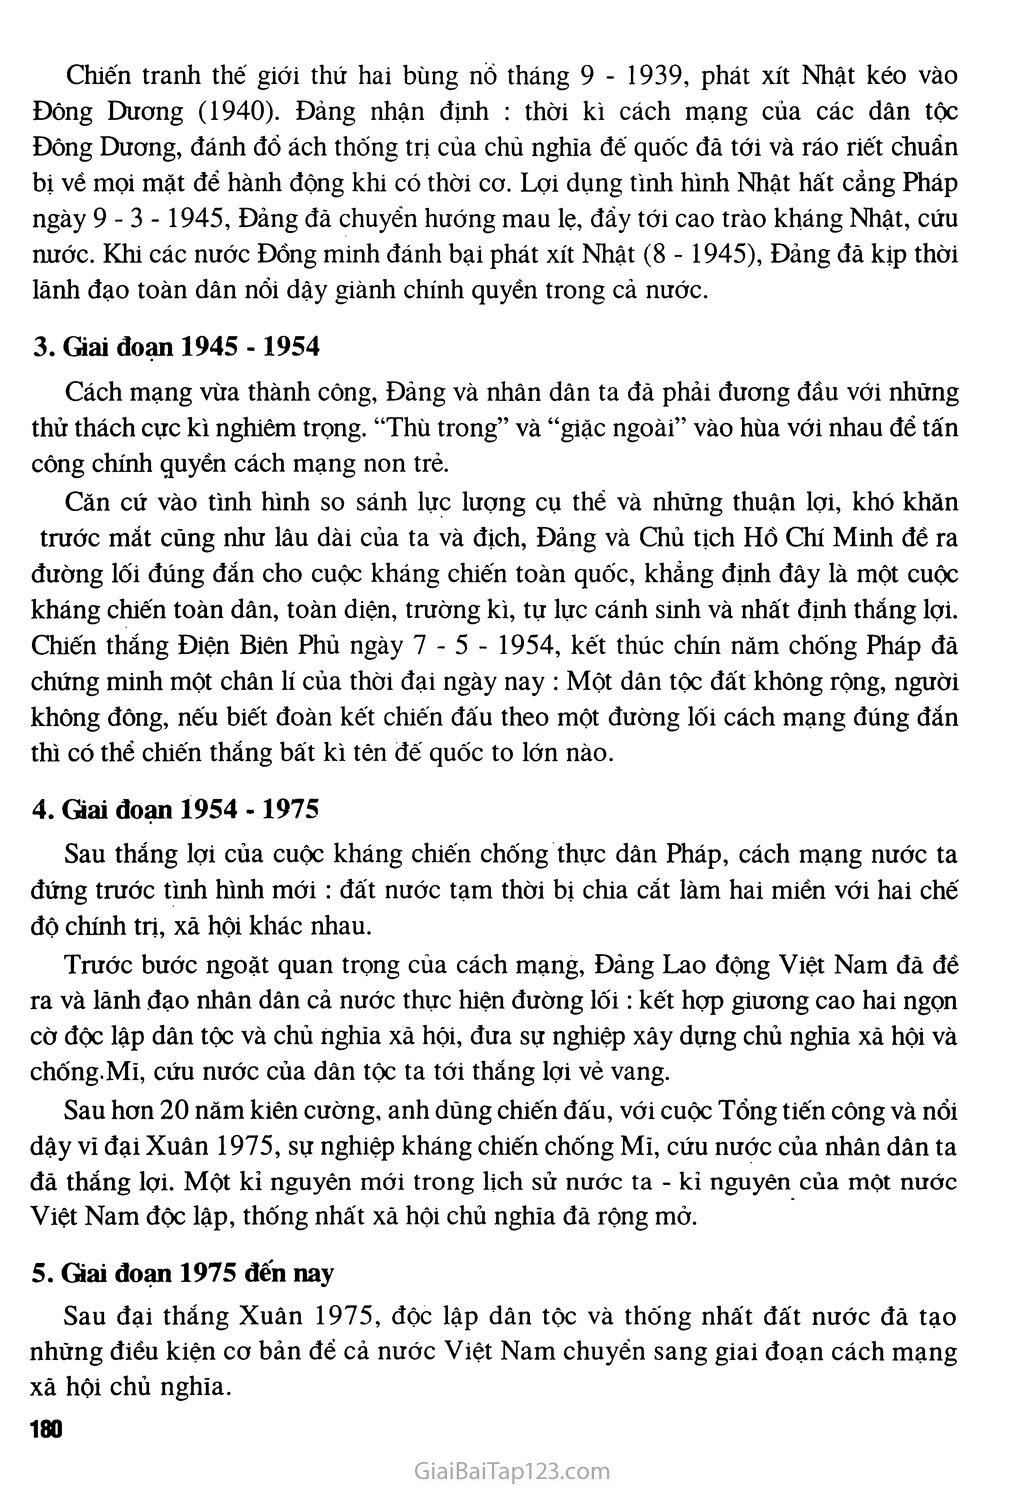 Bài 34 - Tổng kết lịch sử Việt Nam từ sau Chiến tranh thế giới thứ nhất đến năm 2000 trang 2